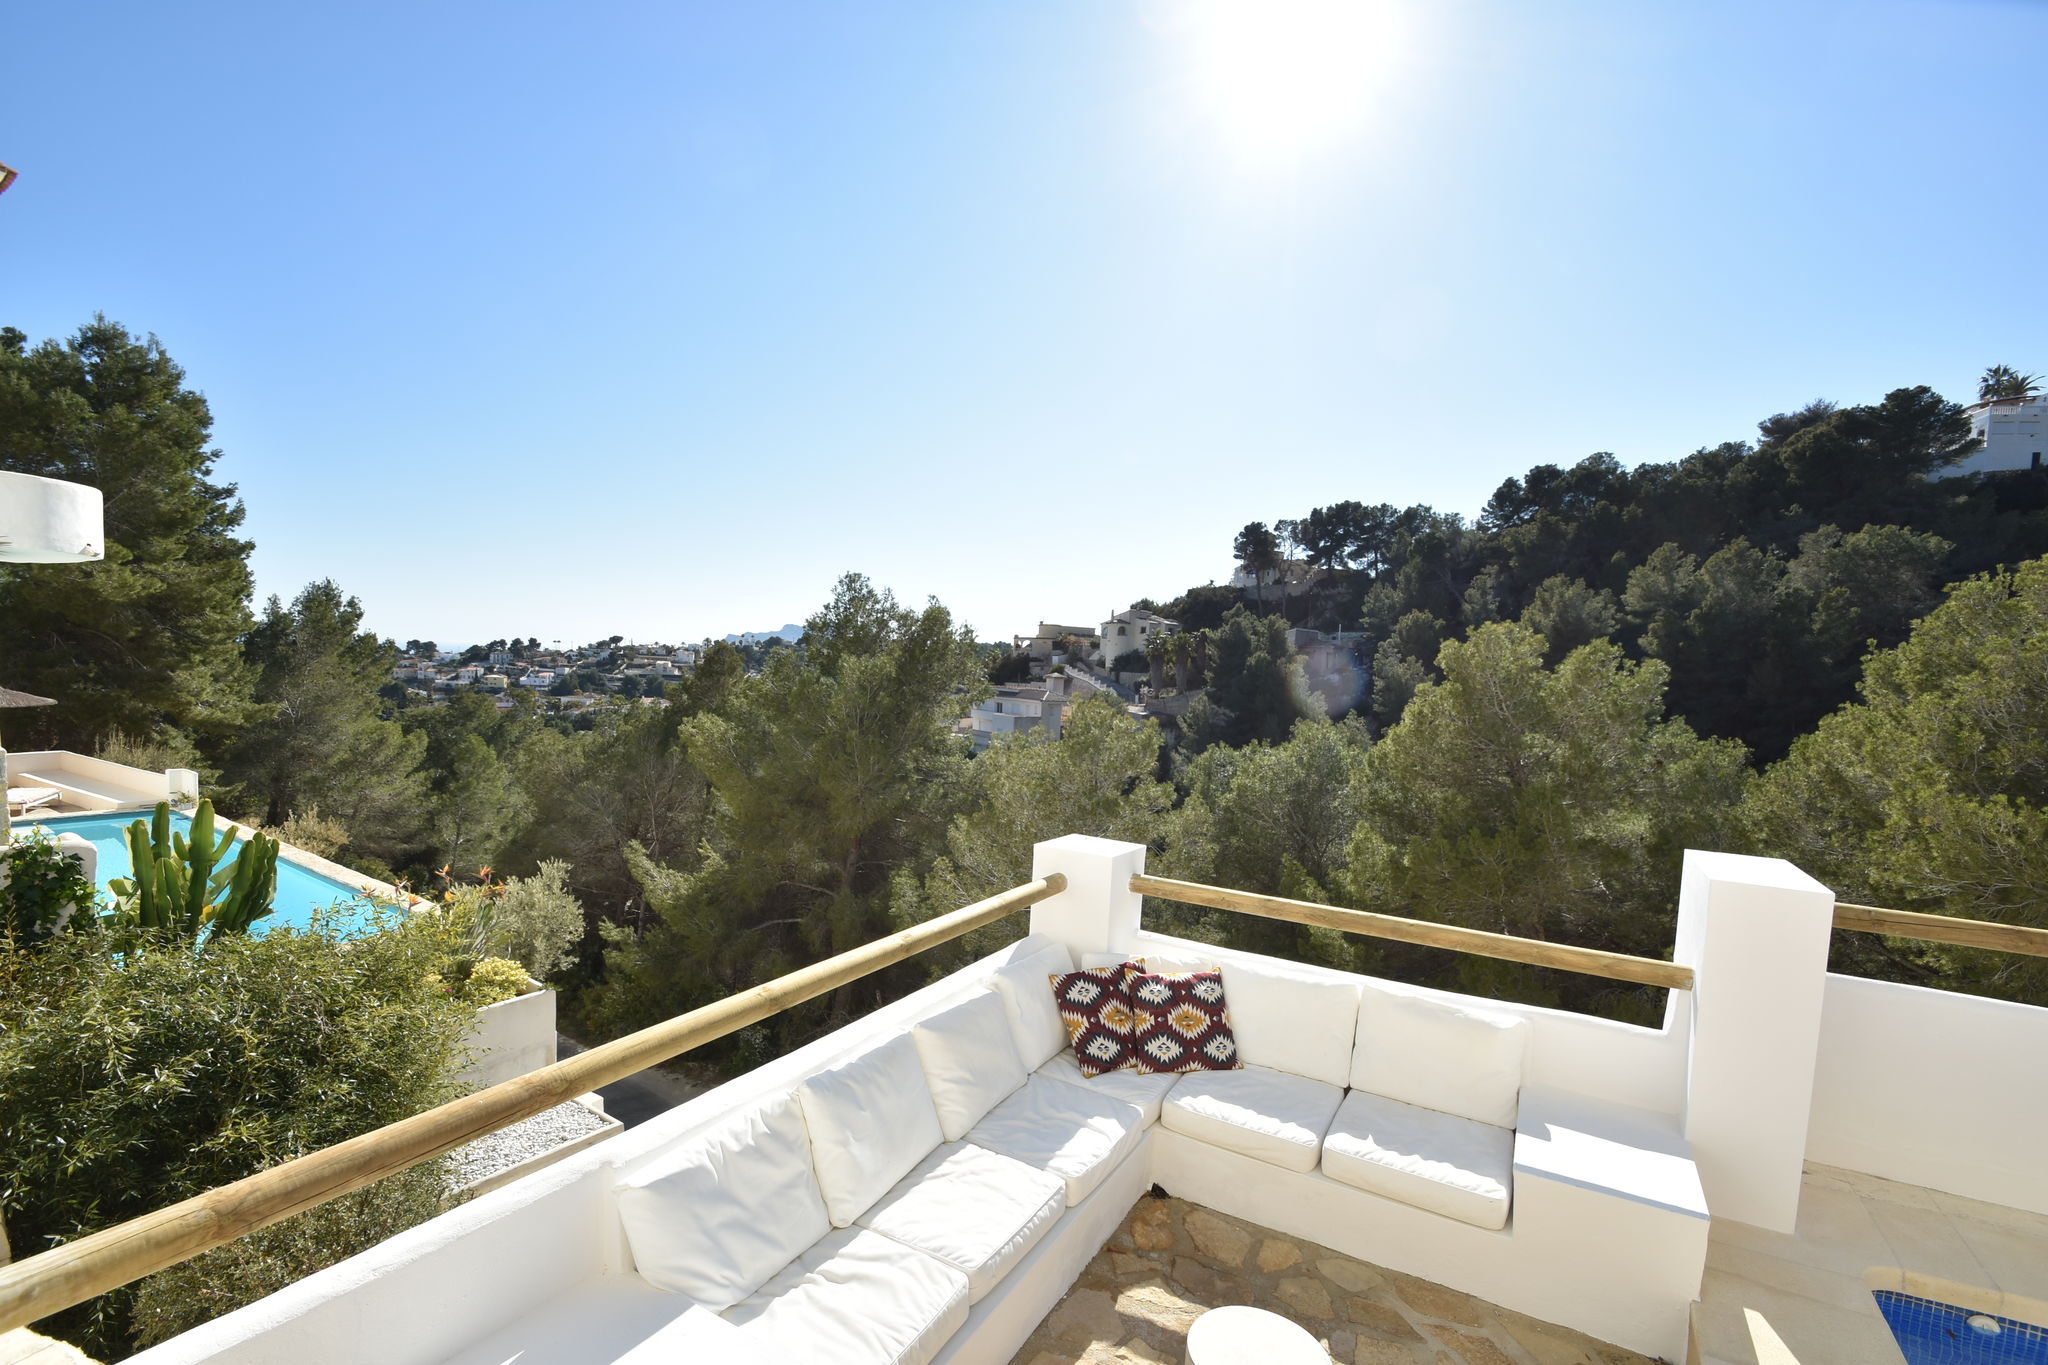 Villa im Ibiza-Stil in Moraira mit privatem Pool und herrlichem Blick